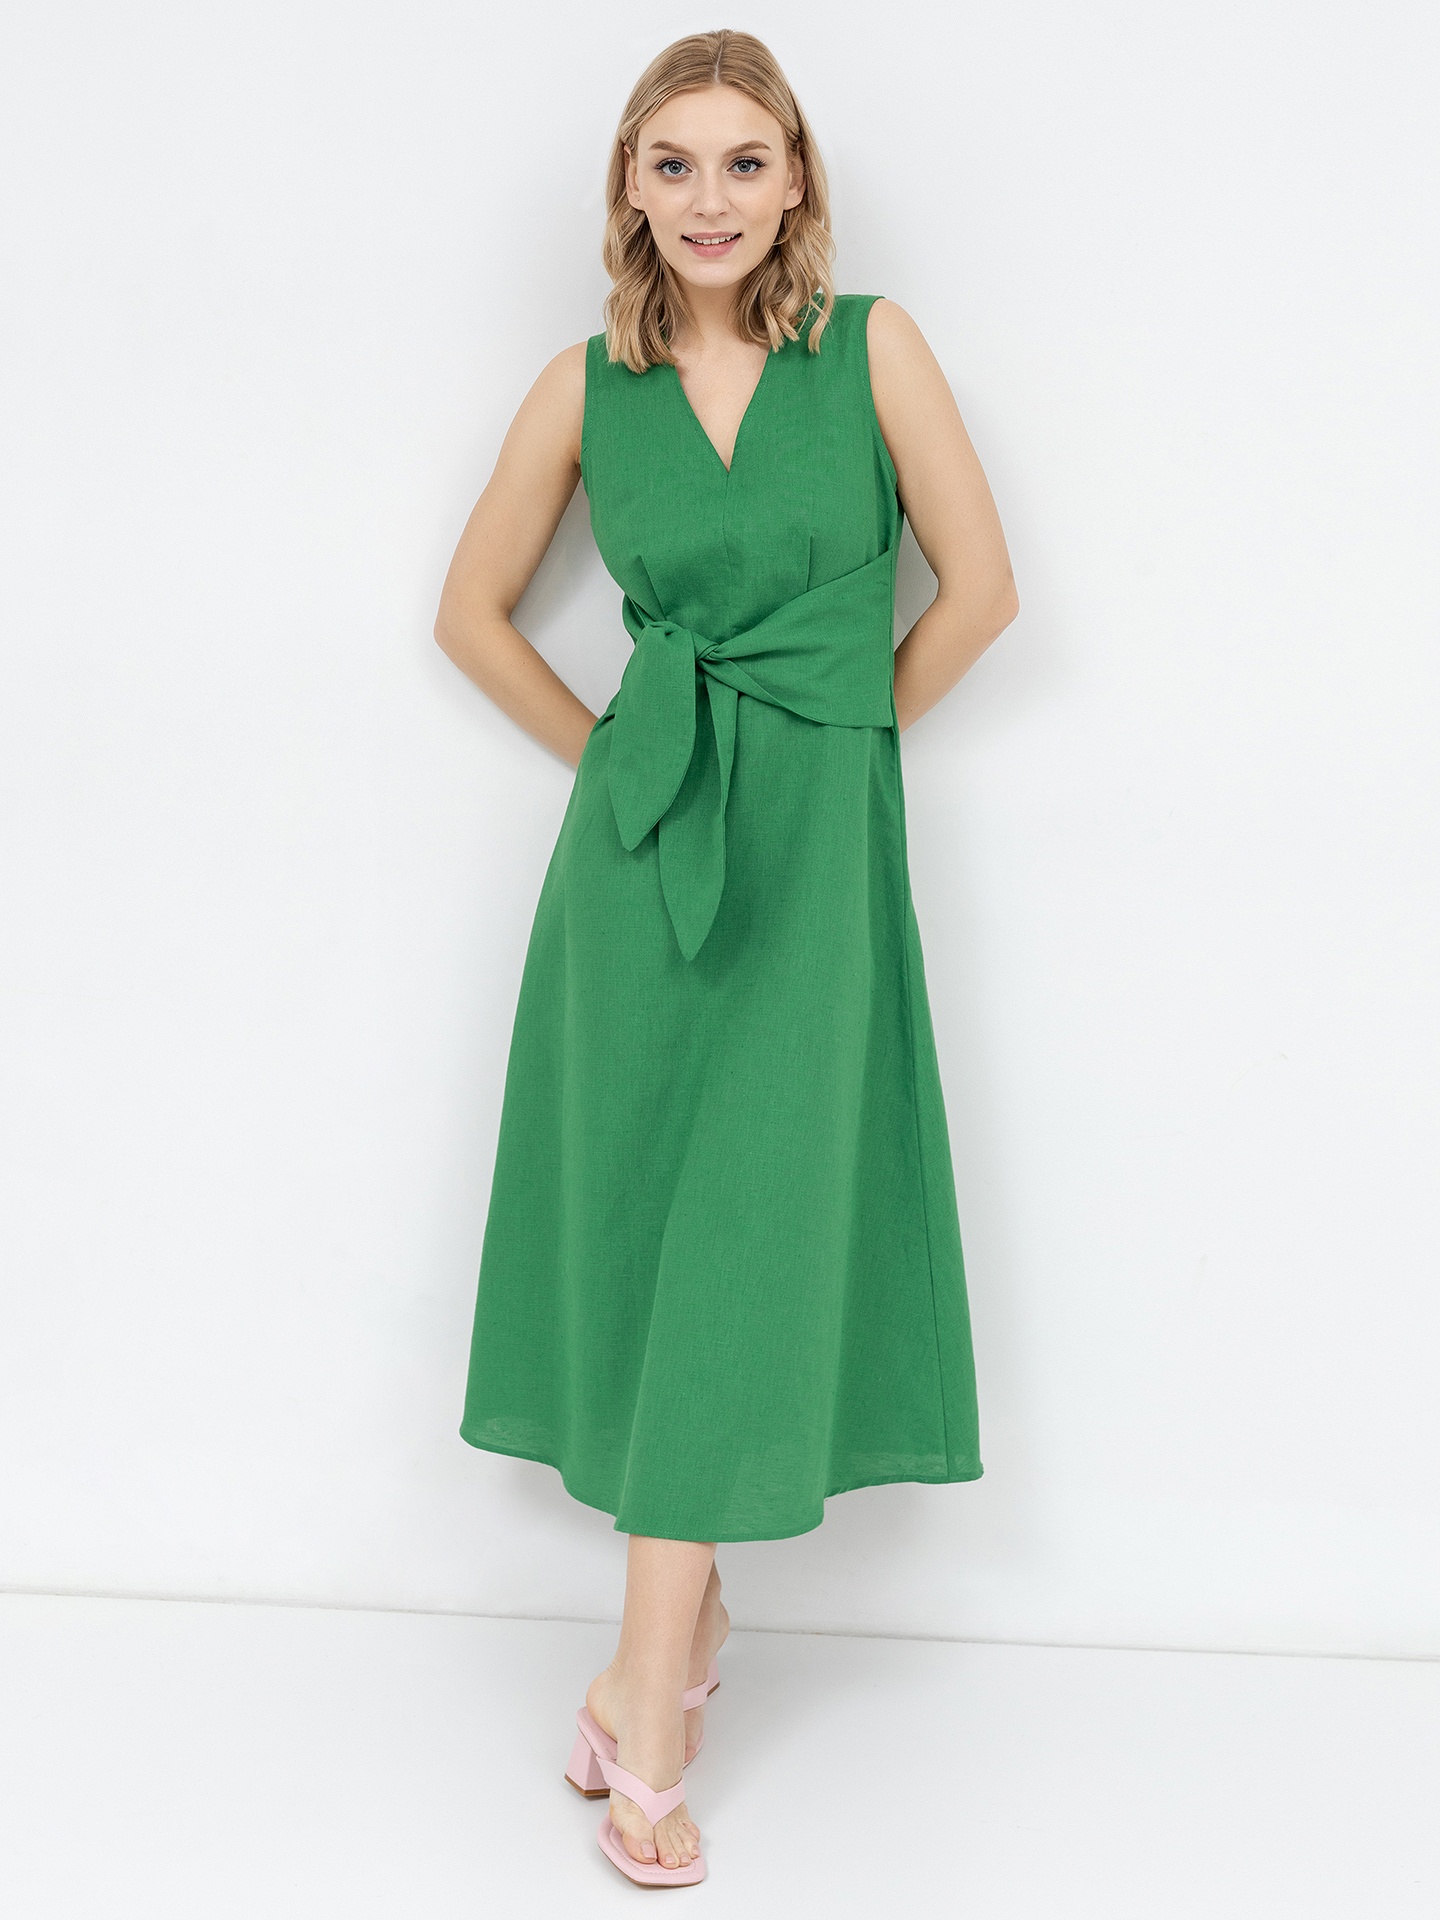 Платье без рукавов из премиального льна и хлопка в зеленом цвете